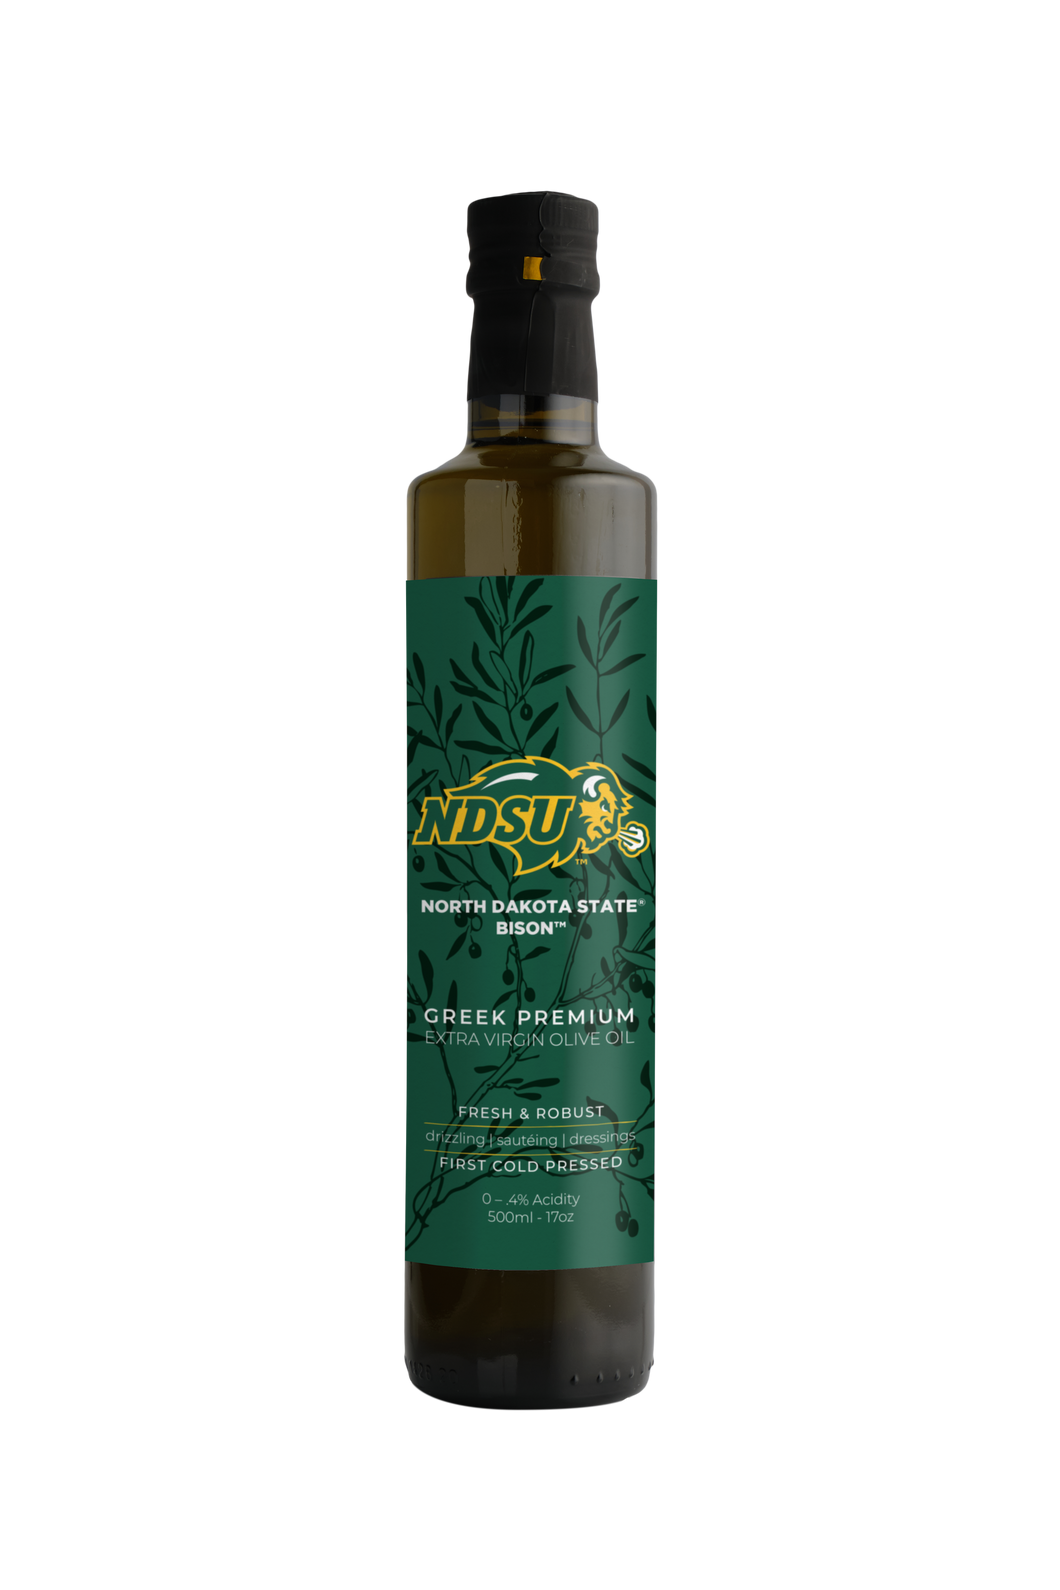 NDSU Bison Extra Virgin Olive Oil